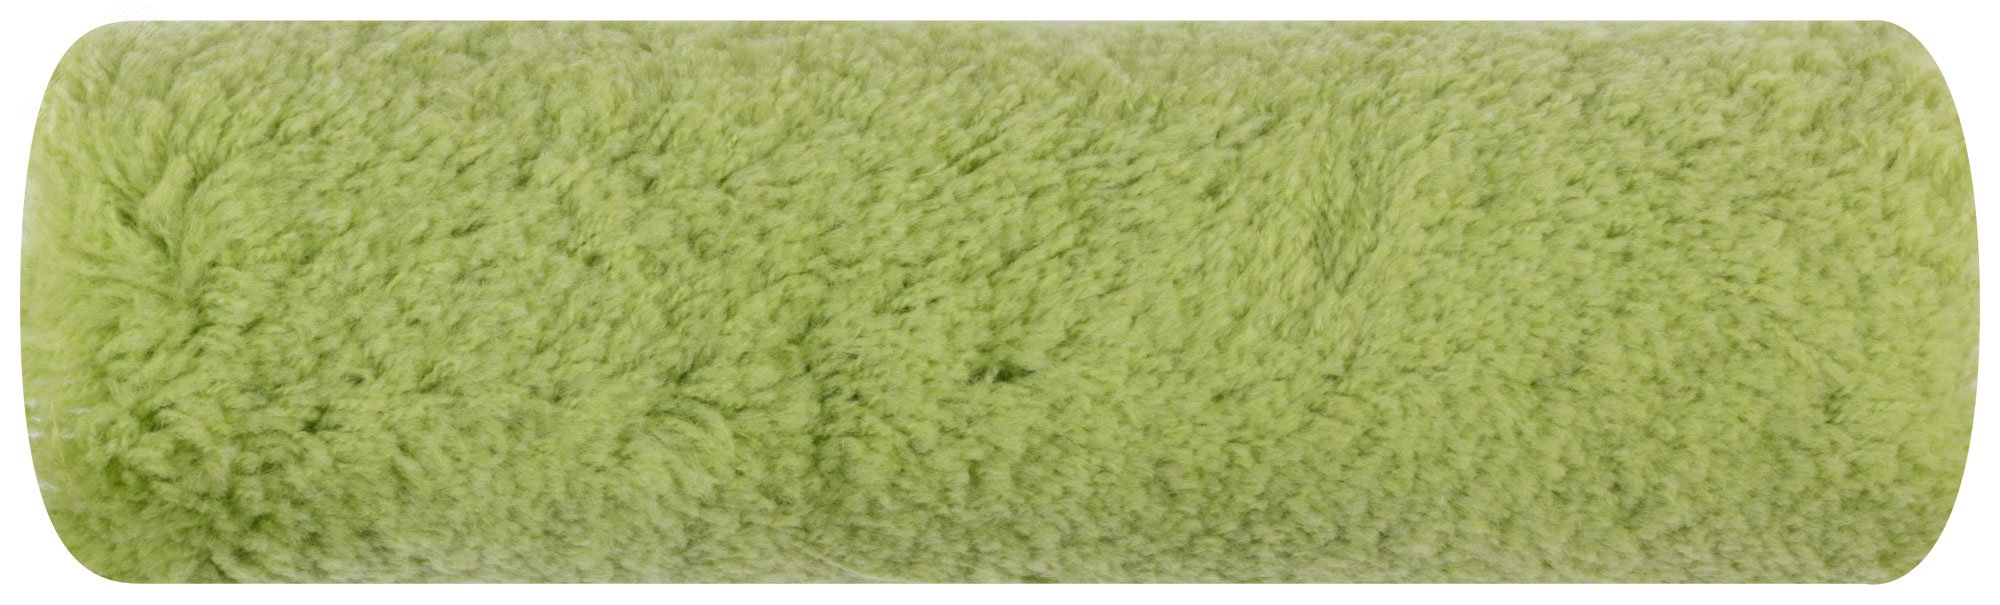 Ролик полиакриловый нитяной зеленый Профи, бюгель 8 мм, диаметр 47/83 мм, ворс 18 мм, 230 мм 2178 FIT - превью